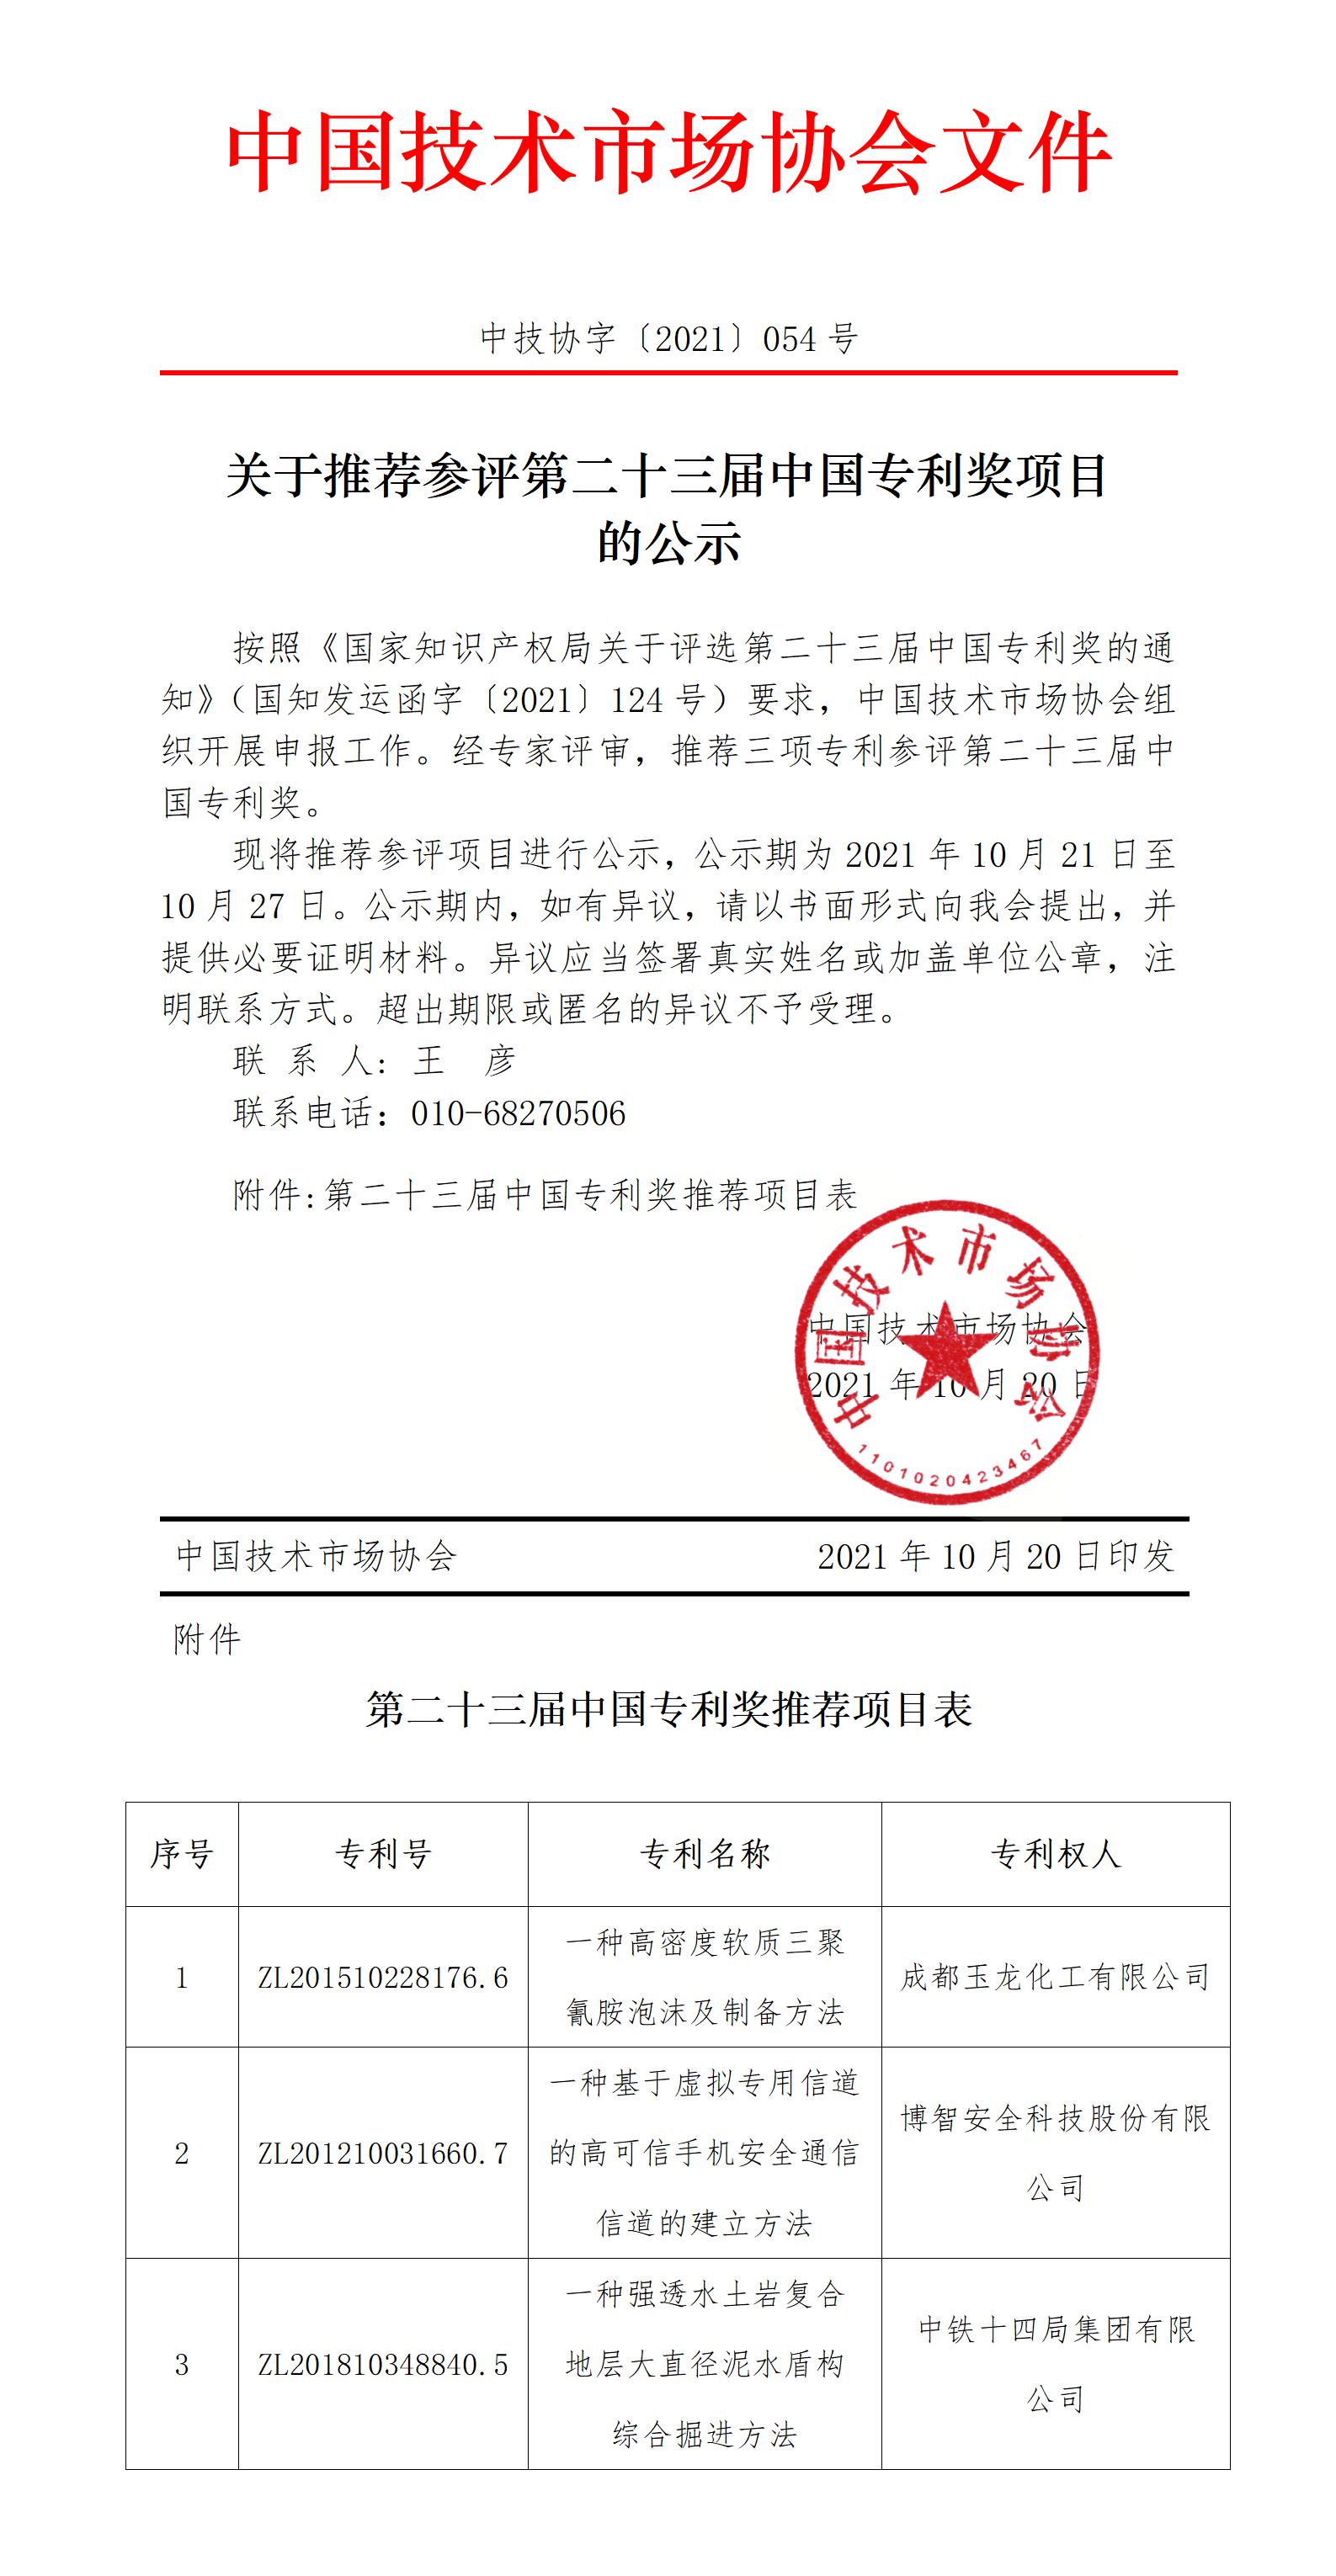 关于推荐参评第二十三届中国专利奖项目的公示.jpg